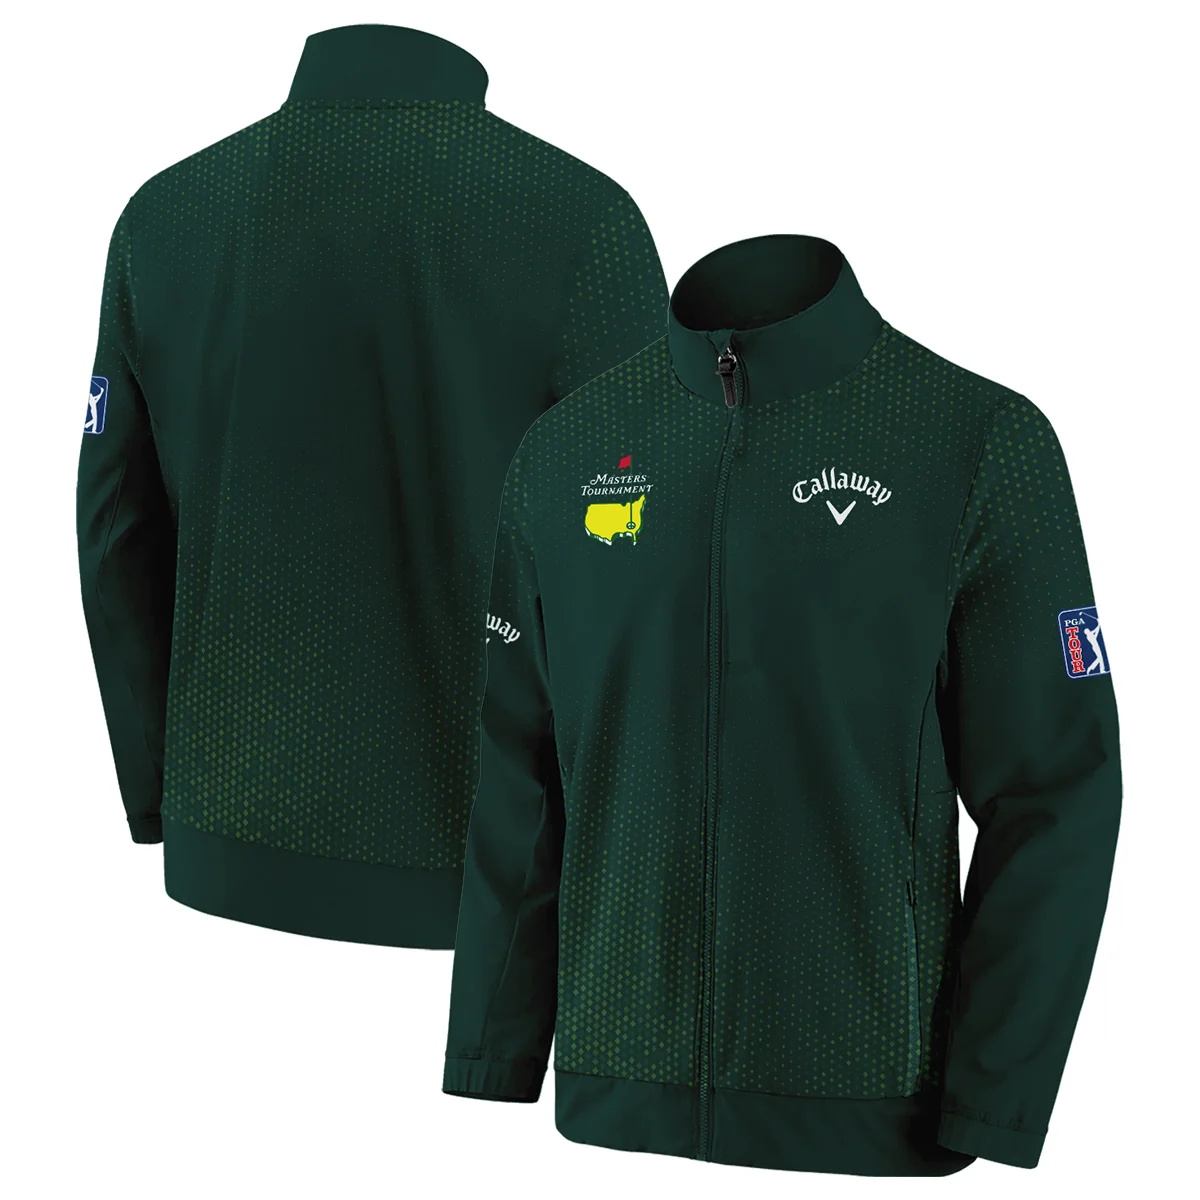 Golf Sport Masters Tournament Callaway Zipper Polo Shirt Sports Dinamond Shape Dark Green Zipper Polo Shirt For Men